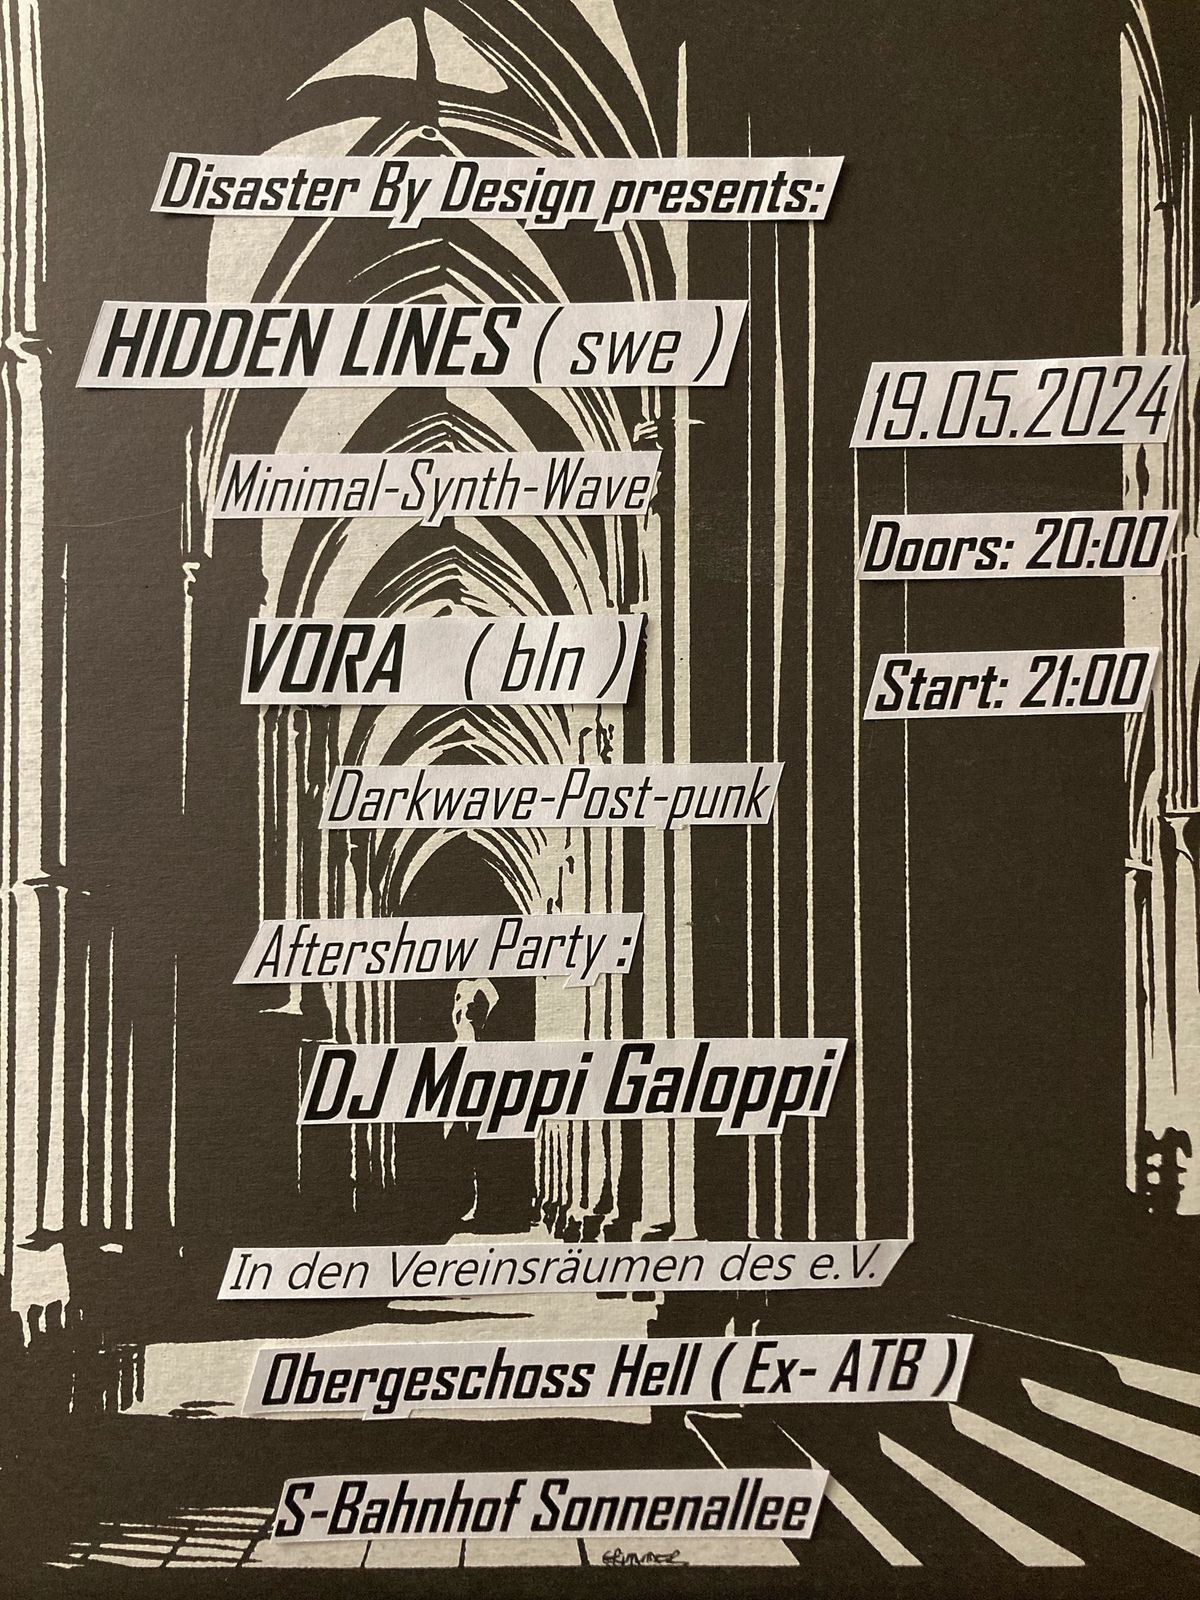 HIDDEN LINES + VORA - After-Show- Party DJ Moppi Galoppi